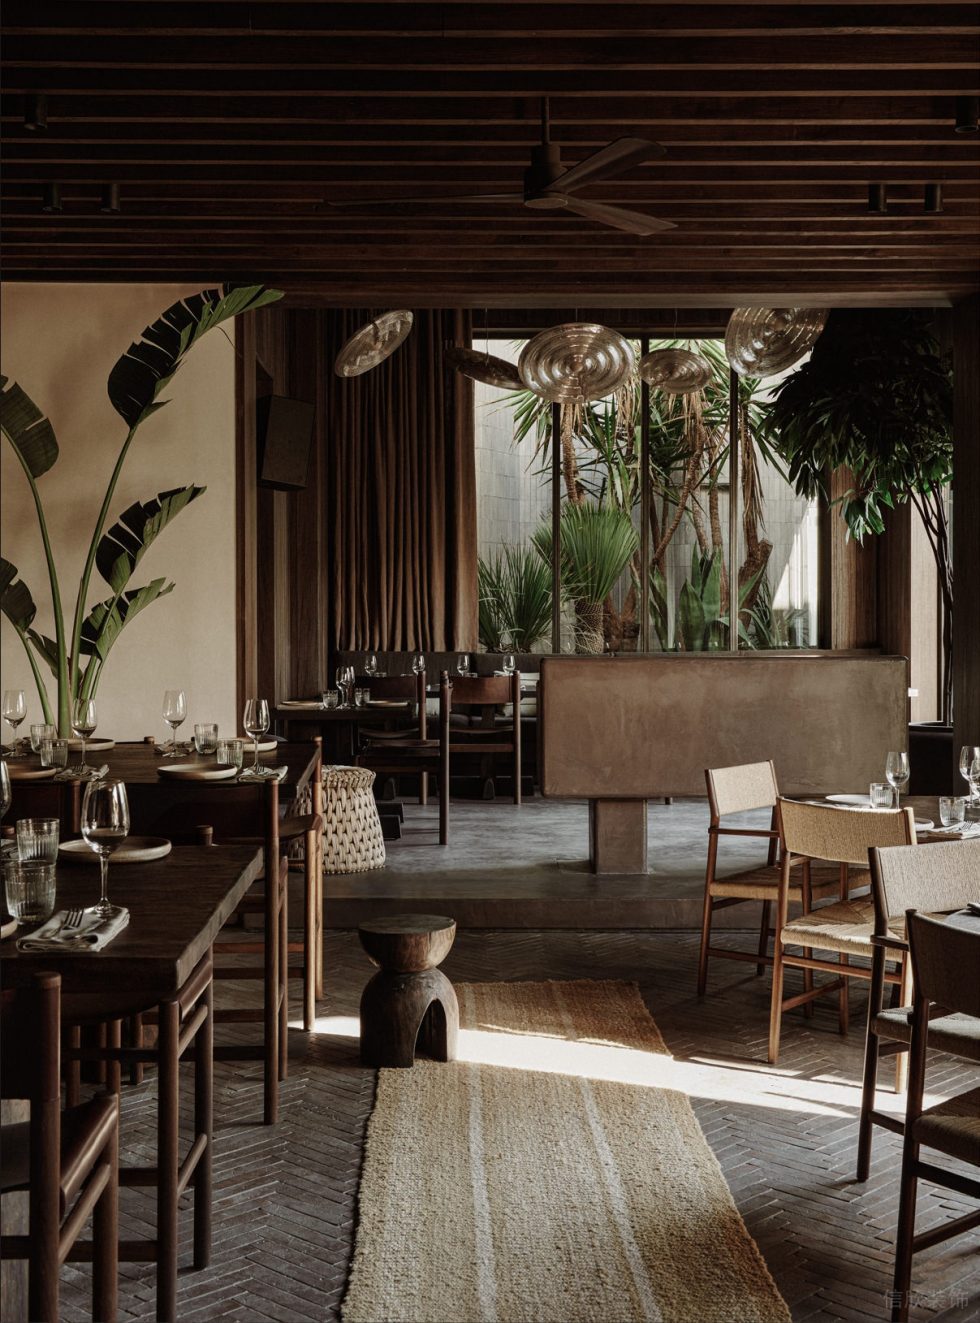 复古田园风西餐厅将翠绿绿植引入室内装修设计